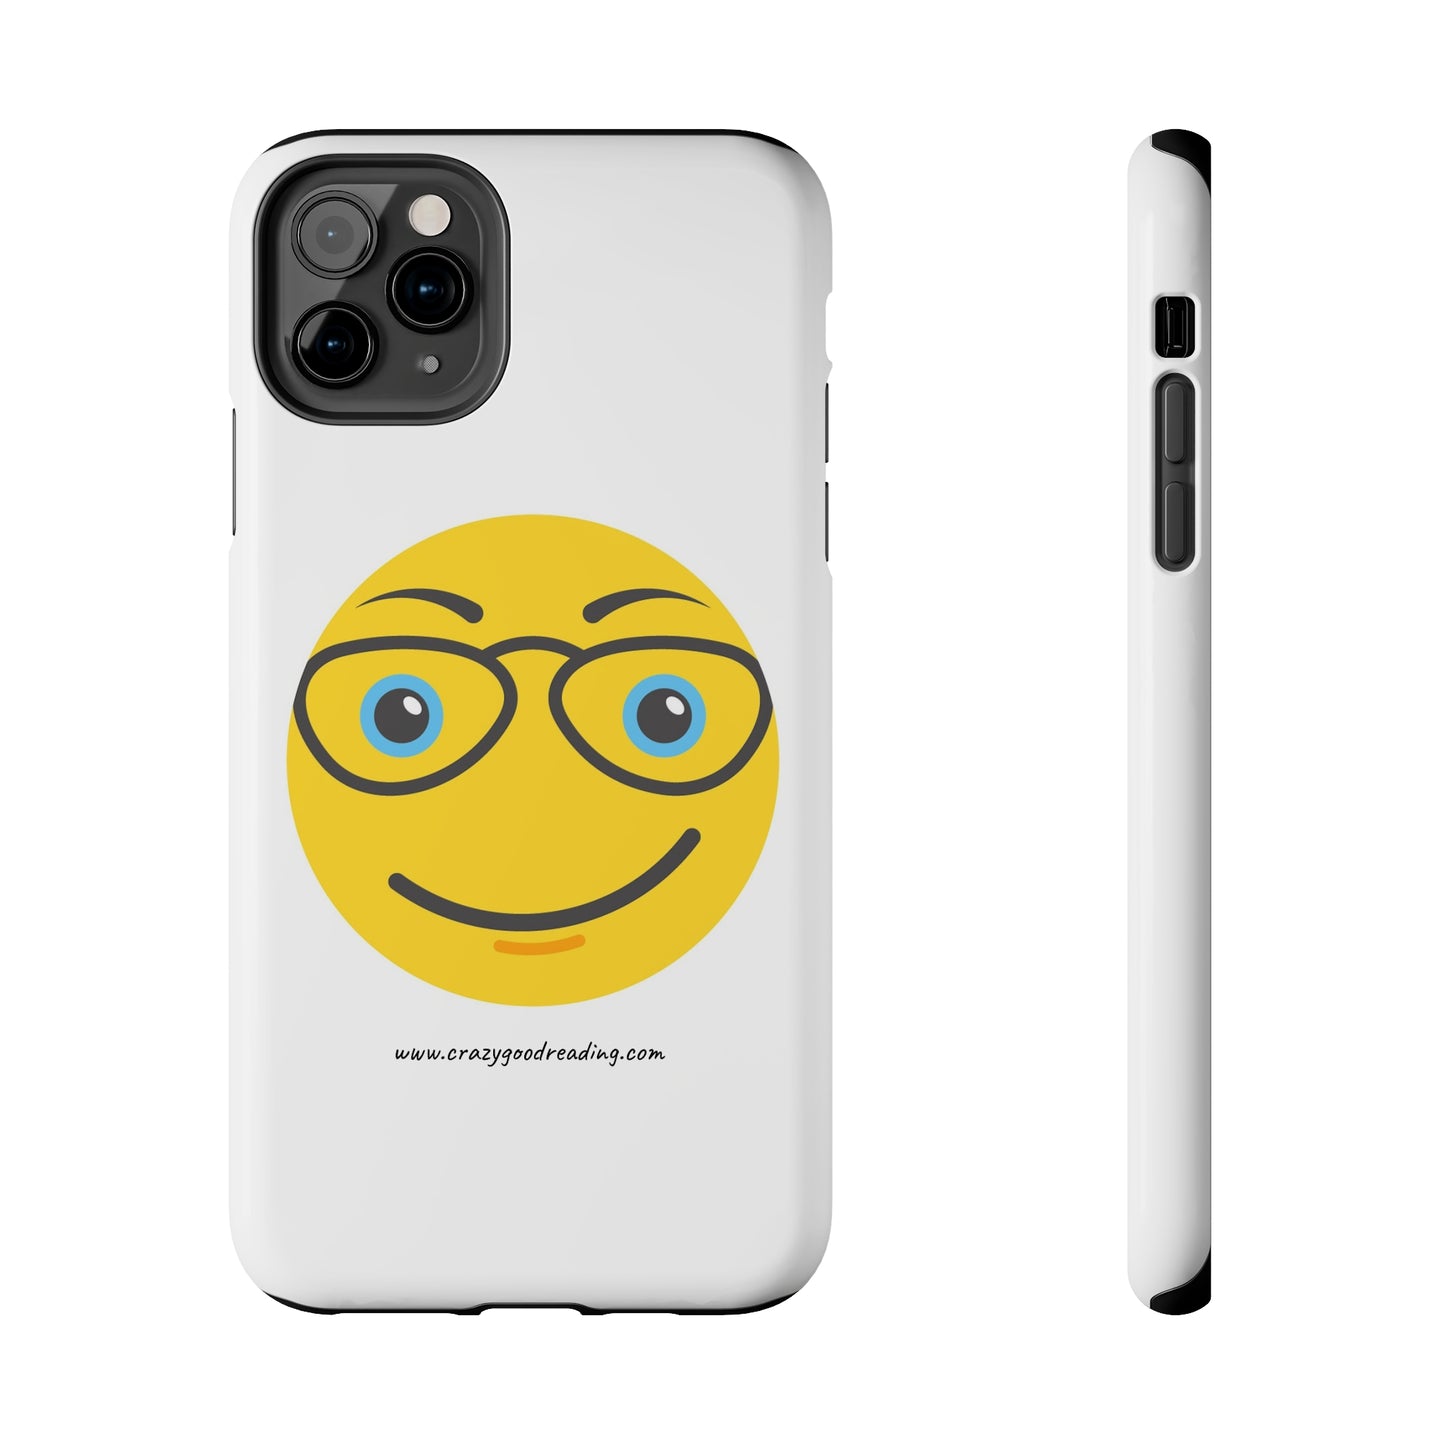 Tough Phone Cases "Smiley Face"